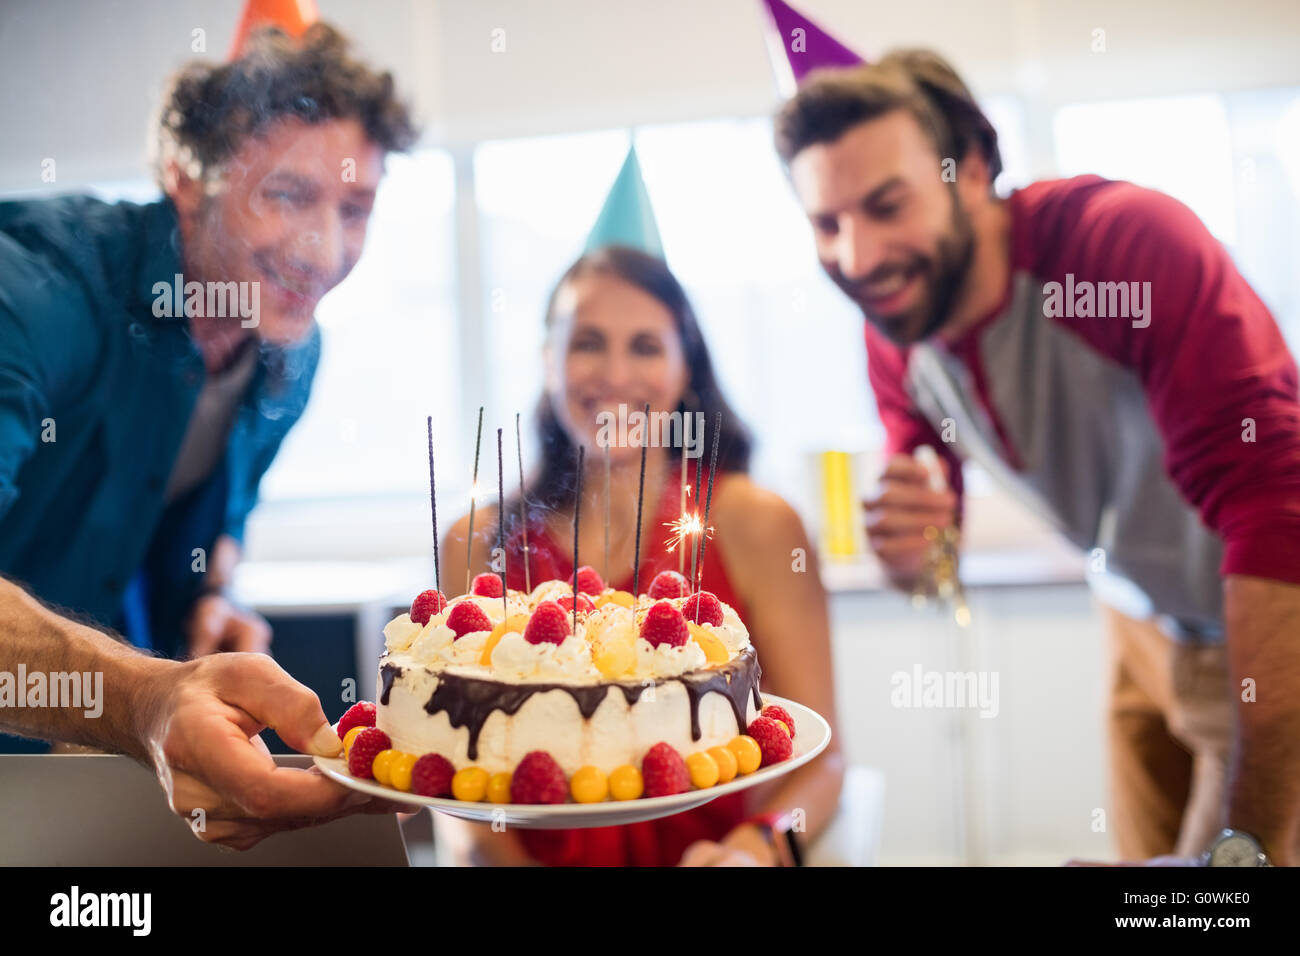 Kolleginnen und Kollegen feiern Geburtstag Stockfoto